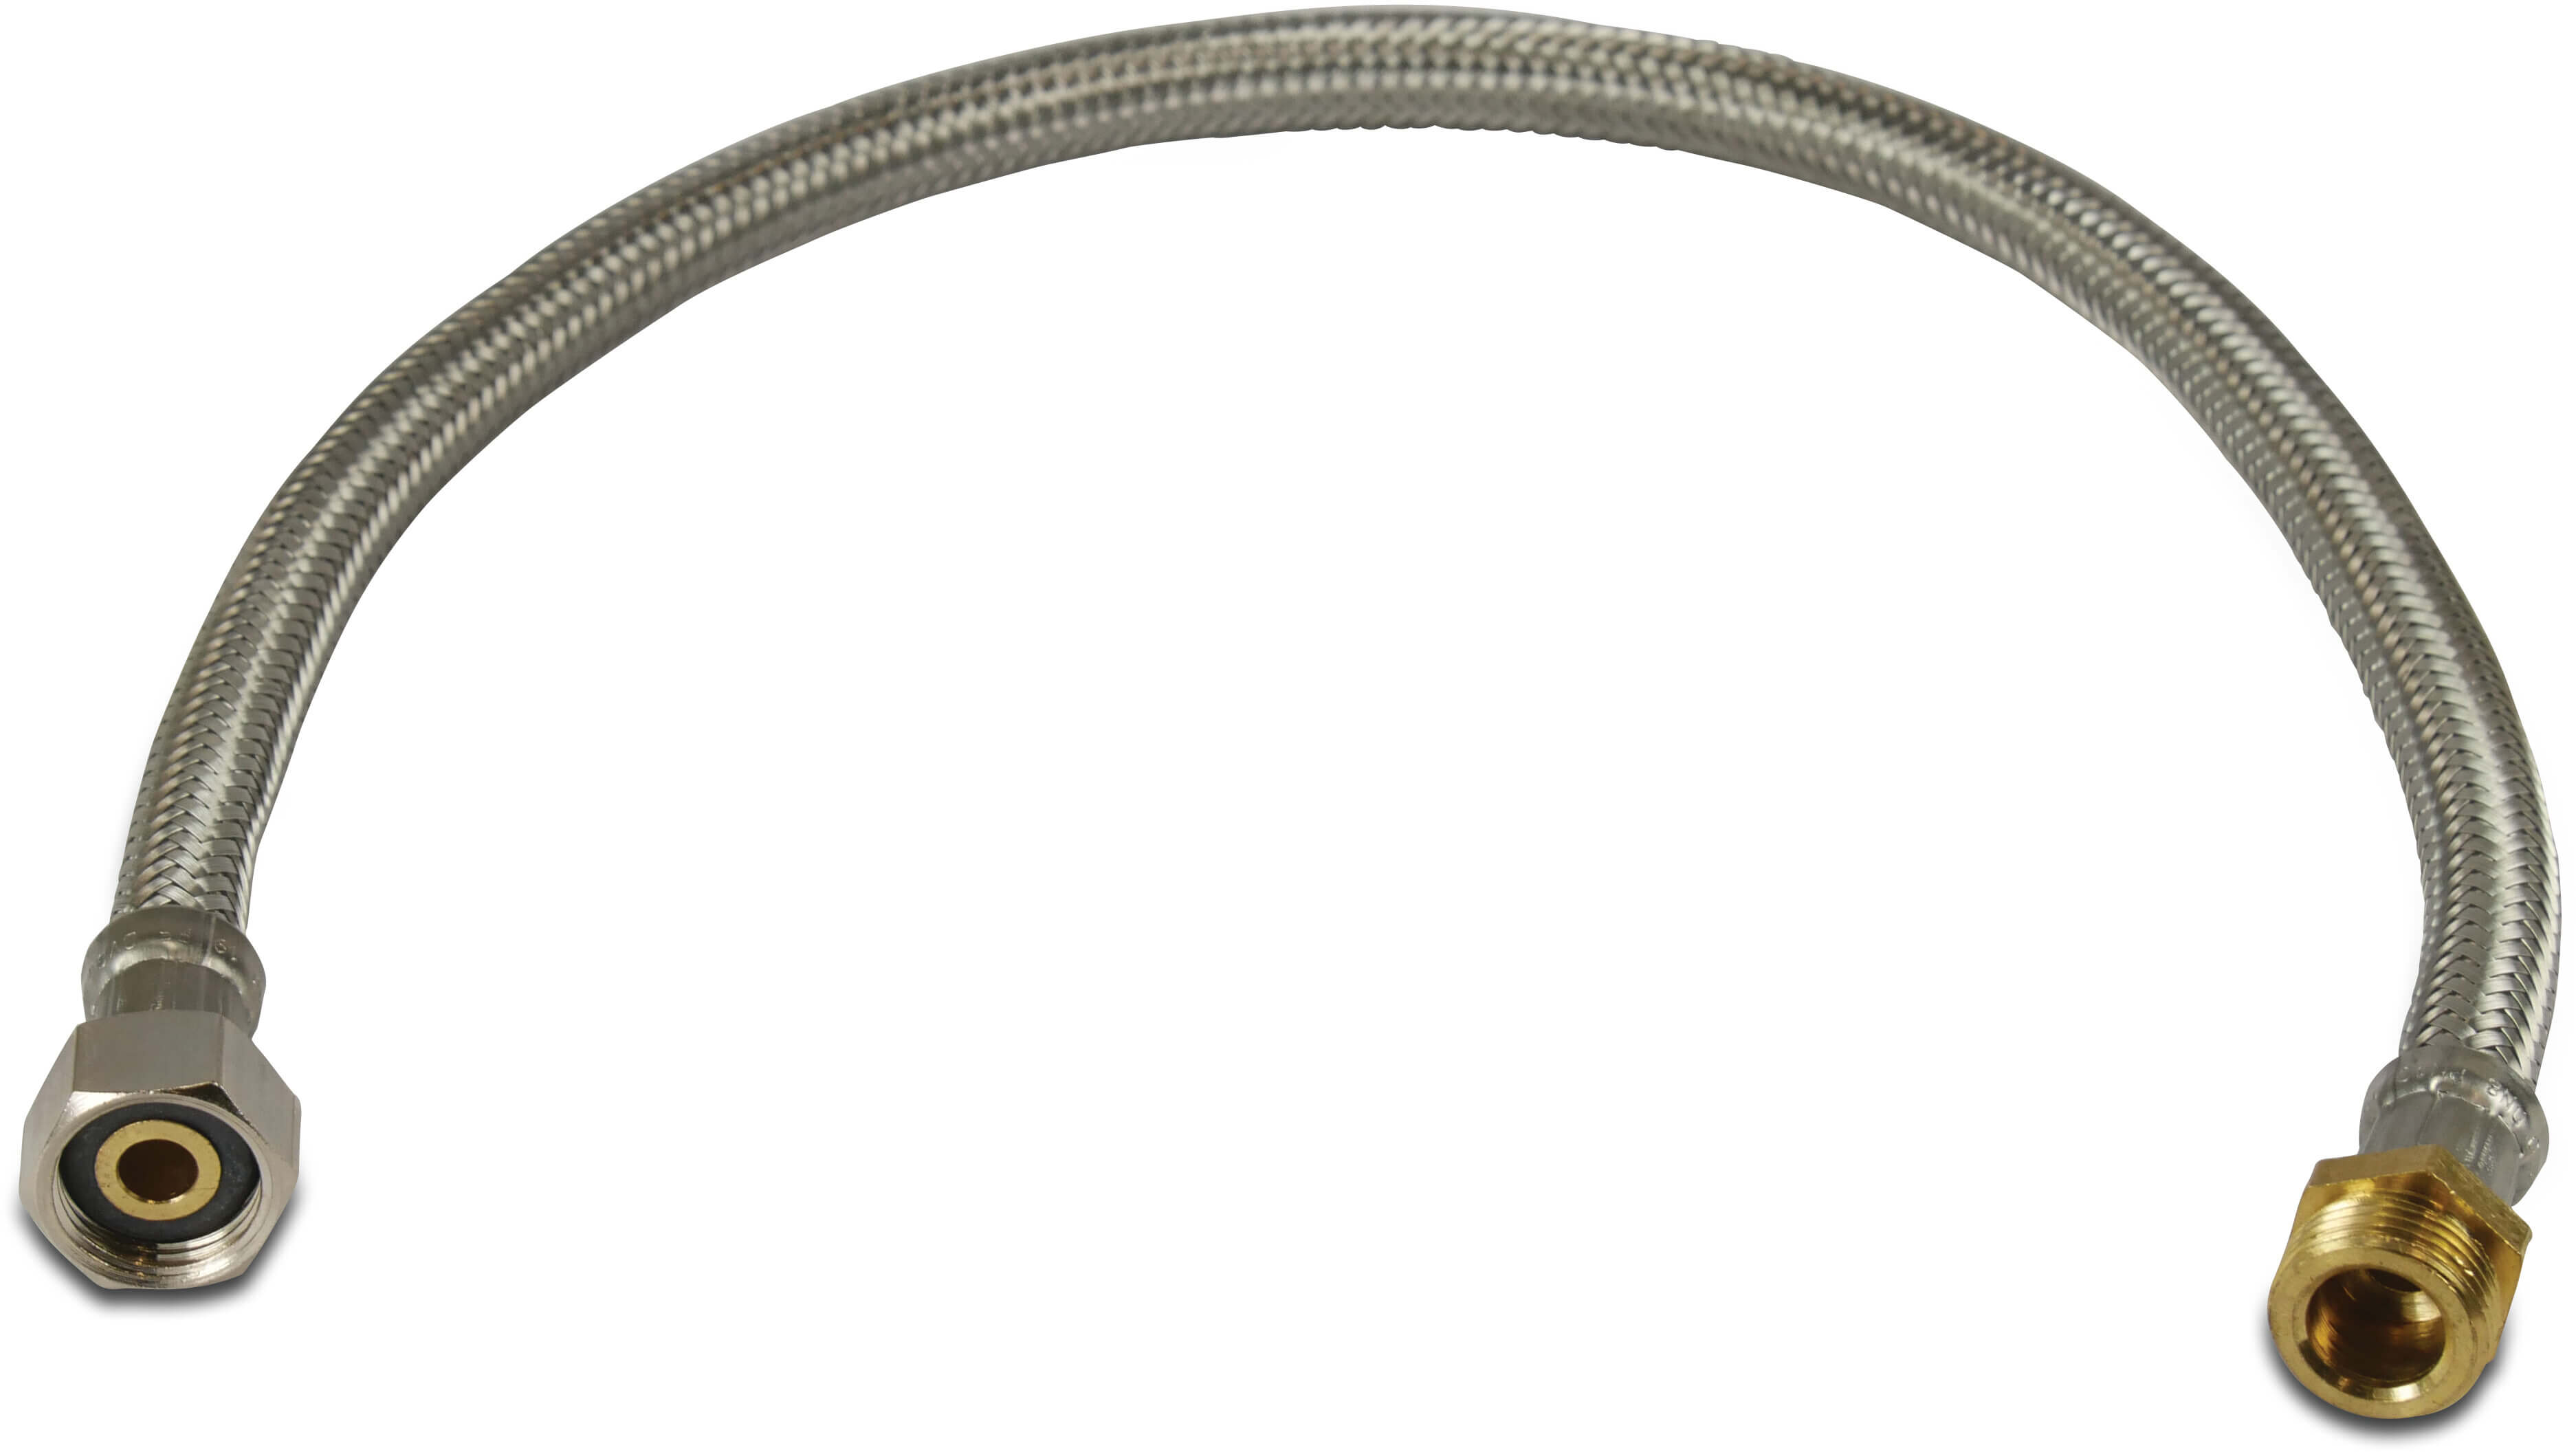 Flätad slang rostfritt stål/silikon 3/8" utvändig gänga x invändig gänga mutter 30cm KTW/DVGW type rak